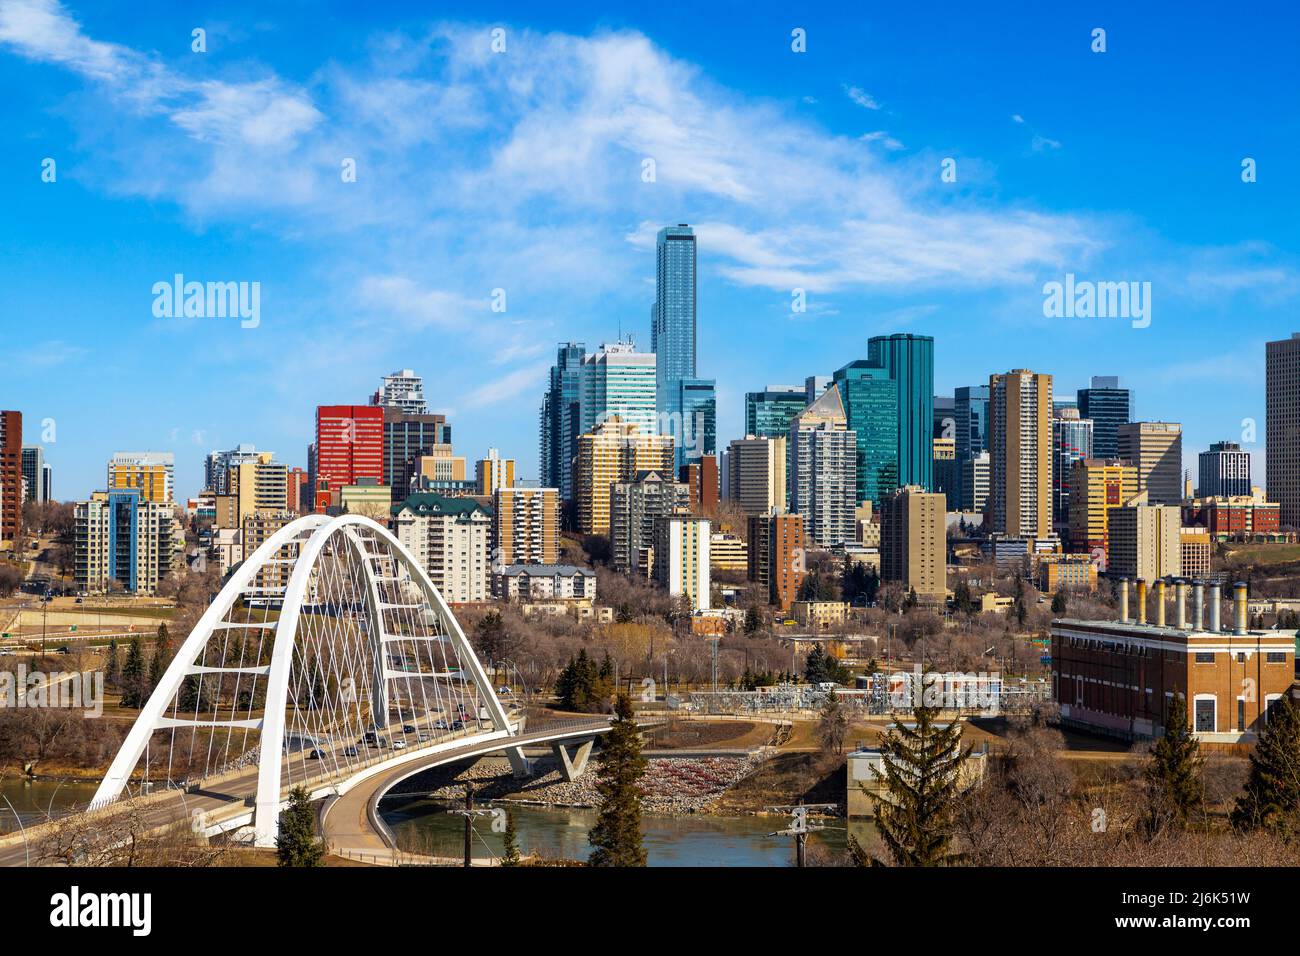 El horizonte del centro de Edmonton muestra el puente Walterdale sobre el río Saskatchewan y los rascacielos de los alrededores. Edmonton es la capital de Alberta, Canadá. Foto de stock